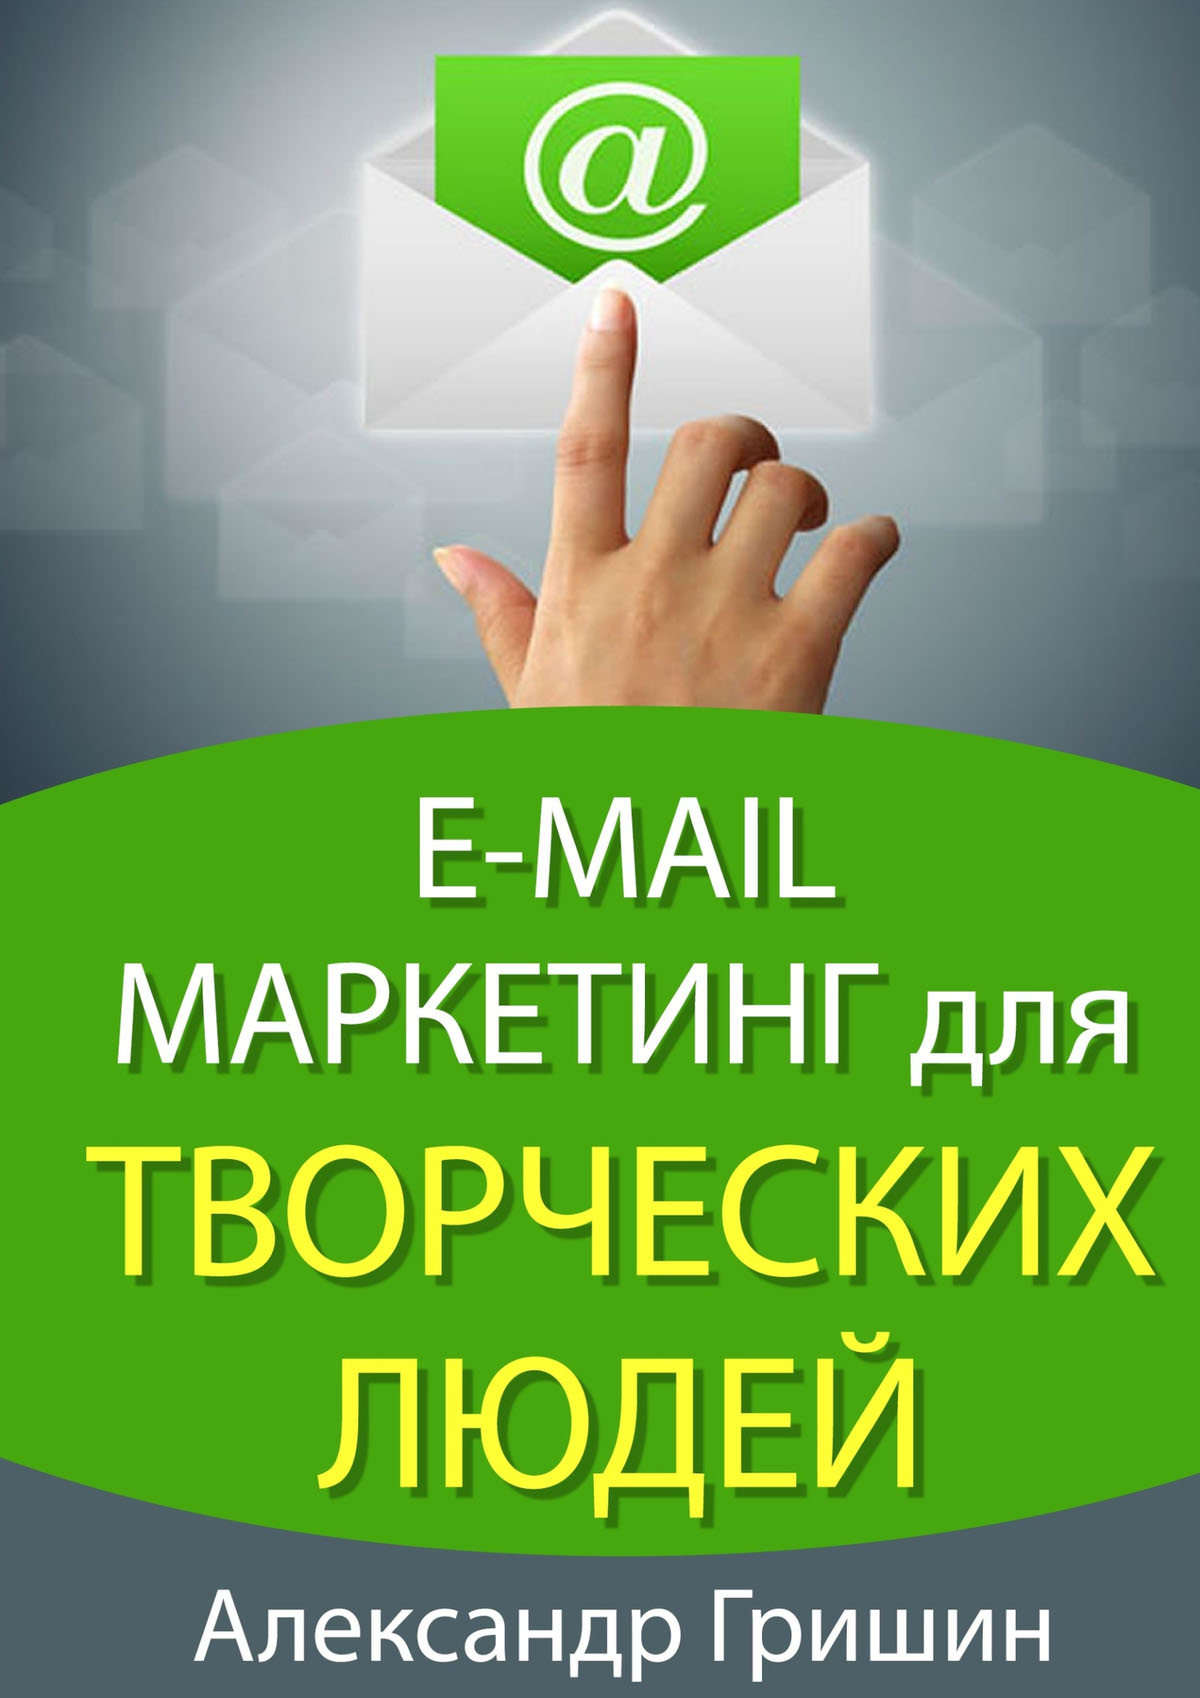 Книга E-mail маркетинг для творческих людей из серии , созданная Александр Гришин, может относится к жанру Руководства, Компьютеры: прочее, Маркетинг, PR, реклама, О бизнесе популярно. Стоимость электронной книги E-mail маркетинг для творческих людей с идентификатором 8593503 составляет 100.00 руб.